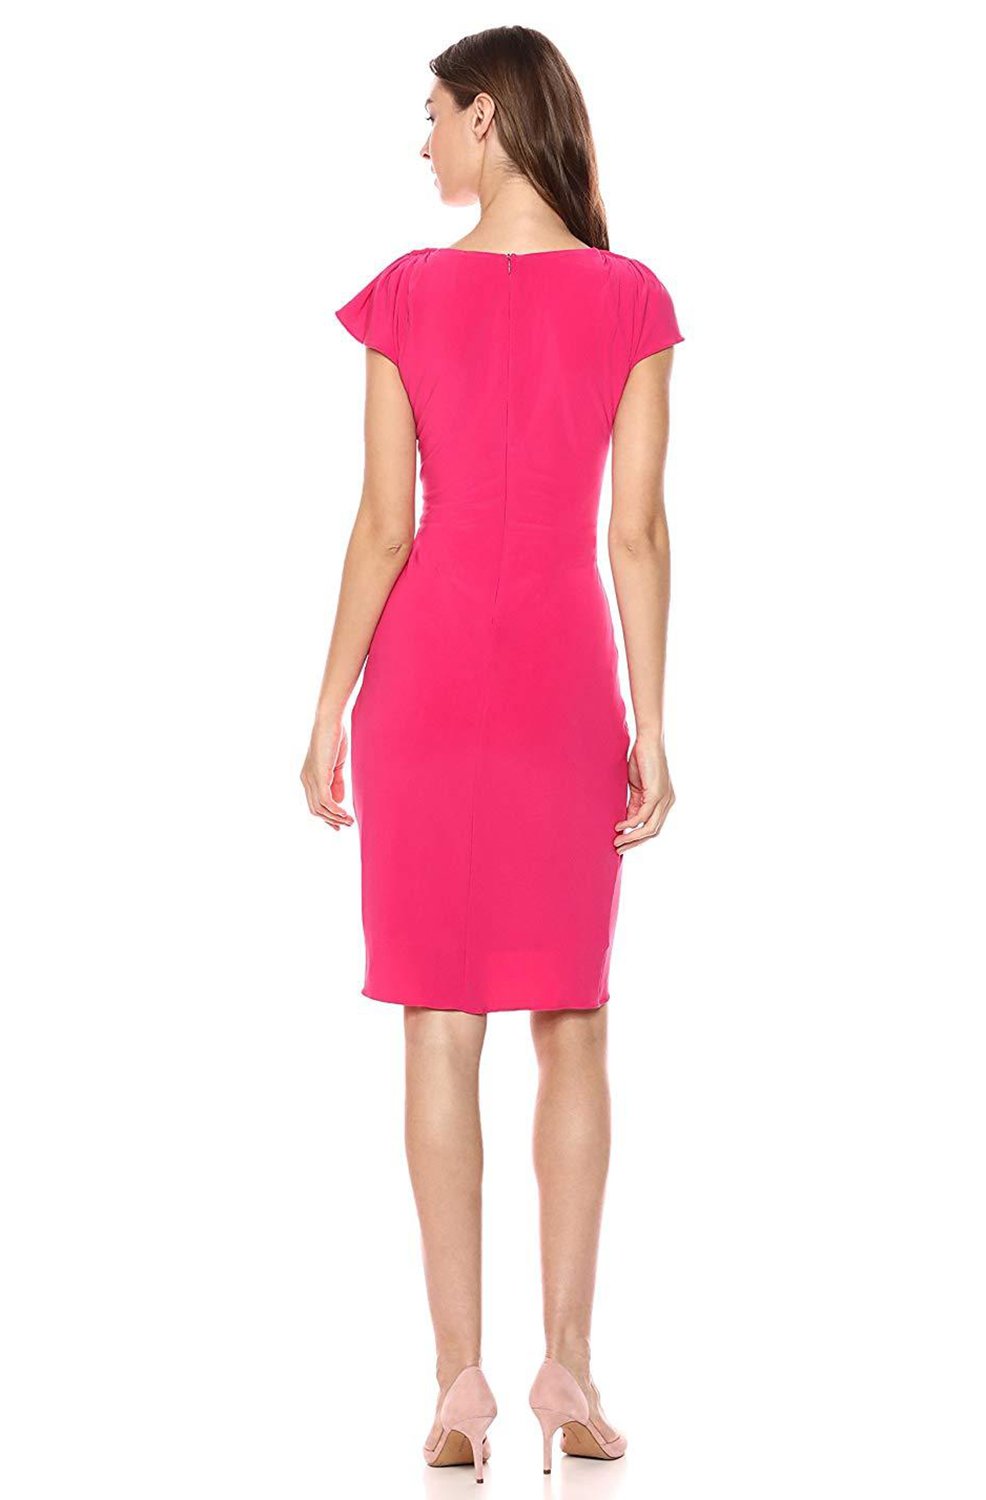 Taylor - 9780MJ Twist Knot Flutter Sleeve Jersey Dress In Pink